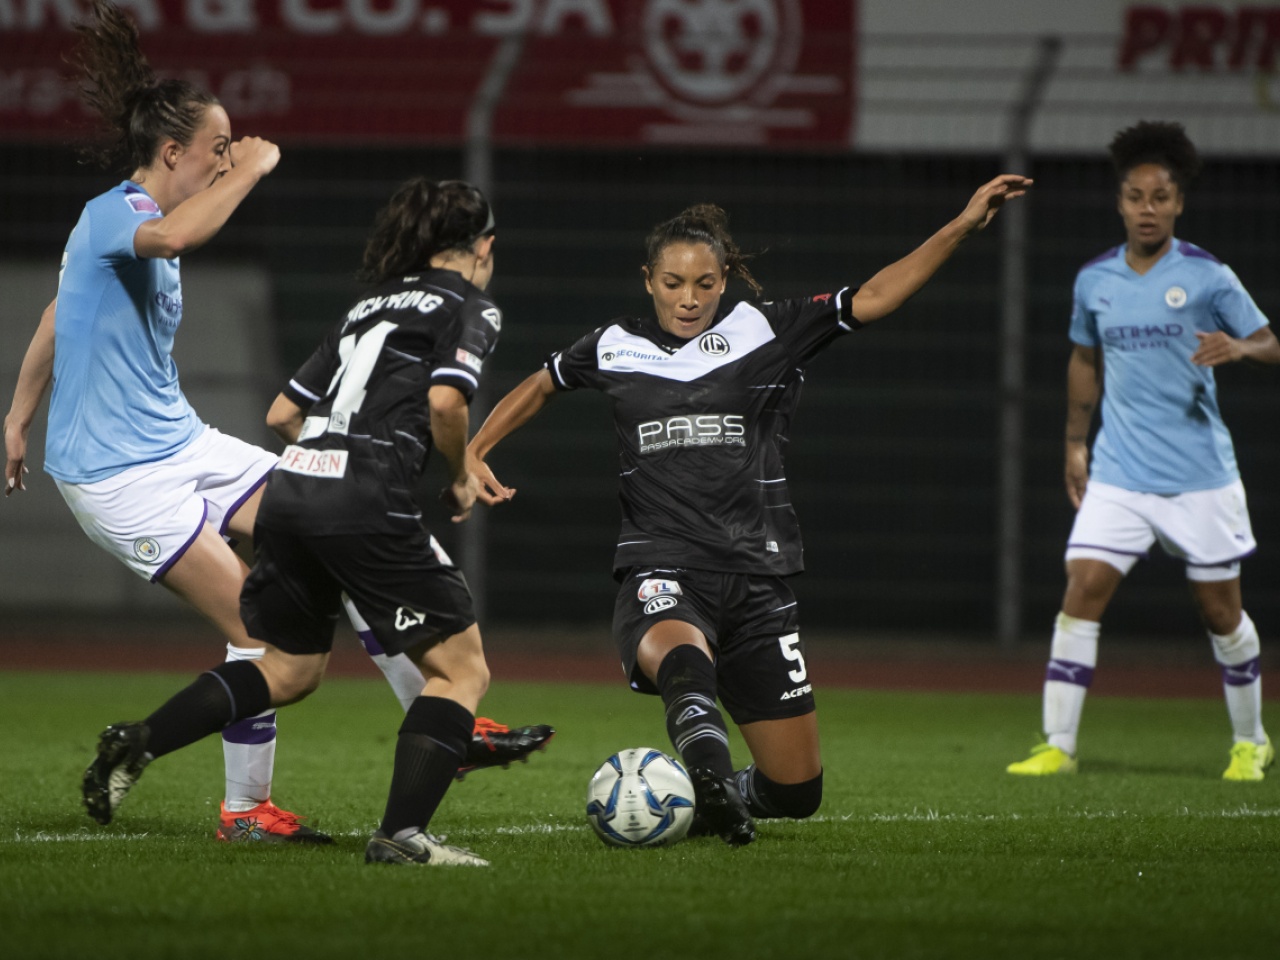 Calcio femminile, il Lugano è da Champions League: ancora due luinesi tra i  protagonisti